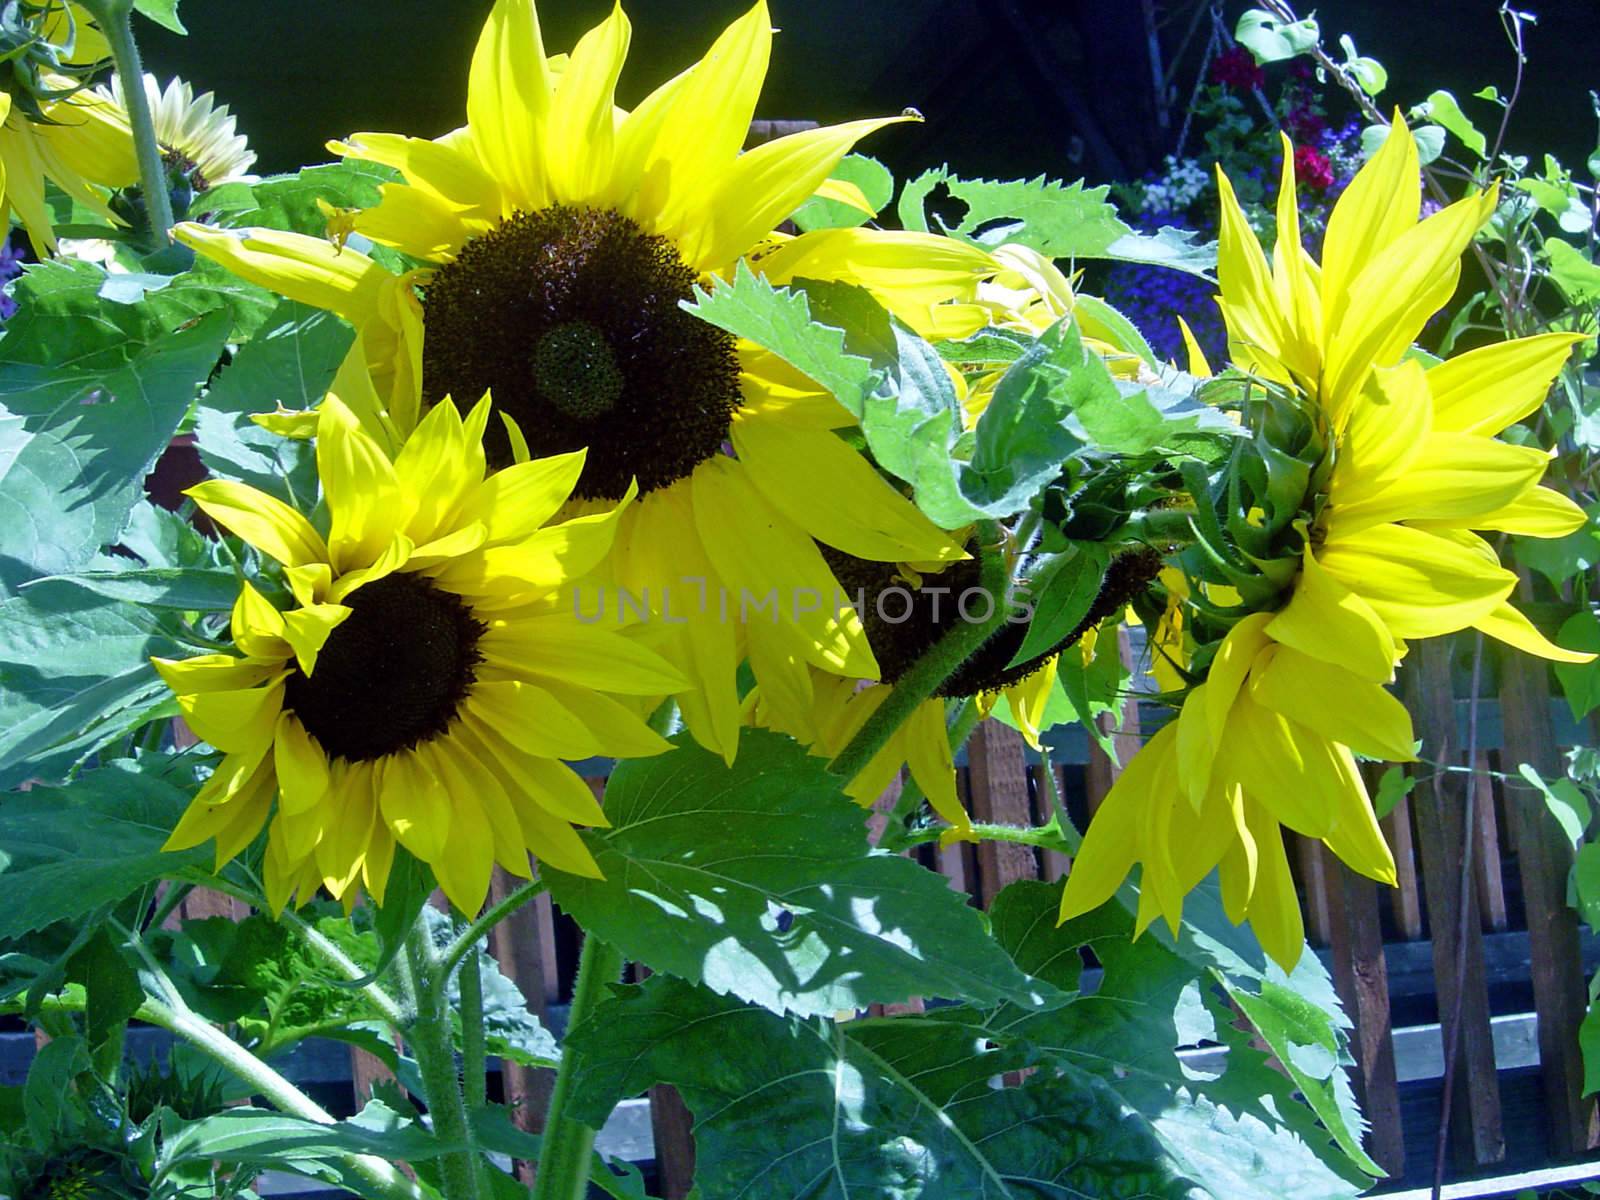 sunflowers by lulu2626